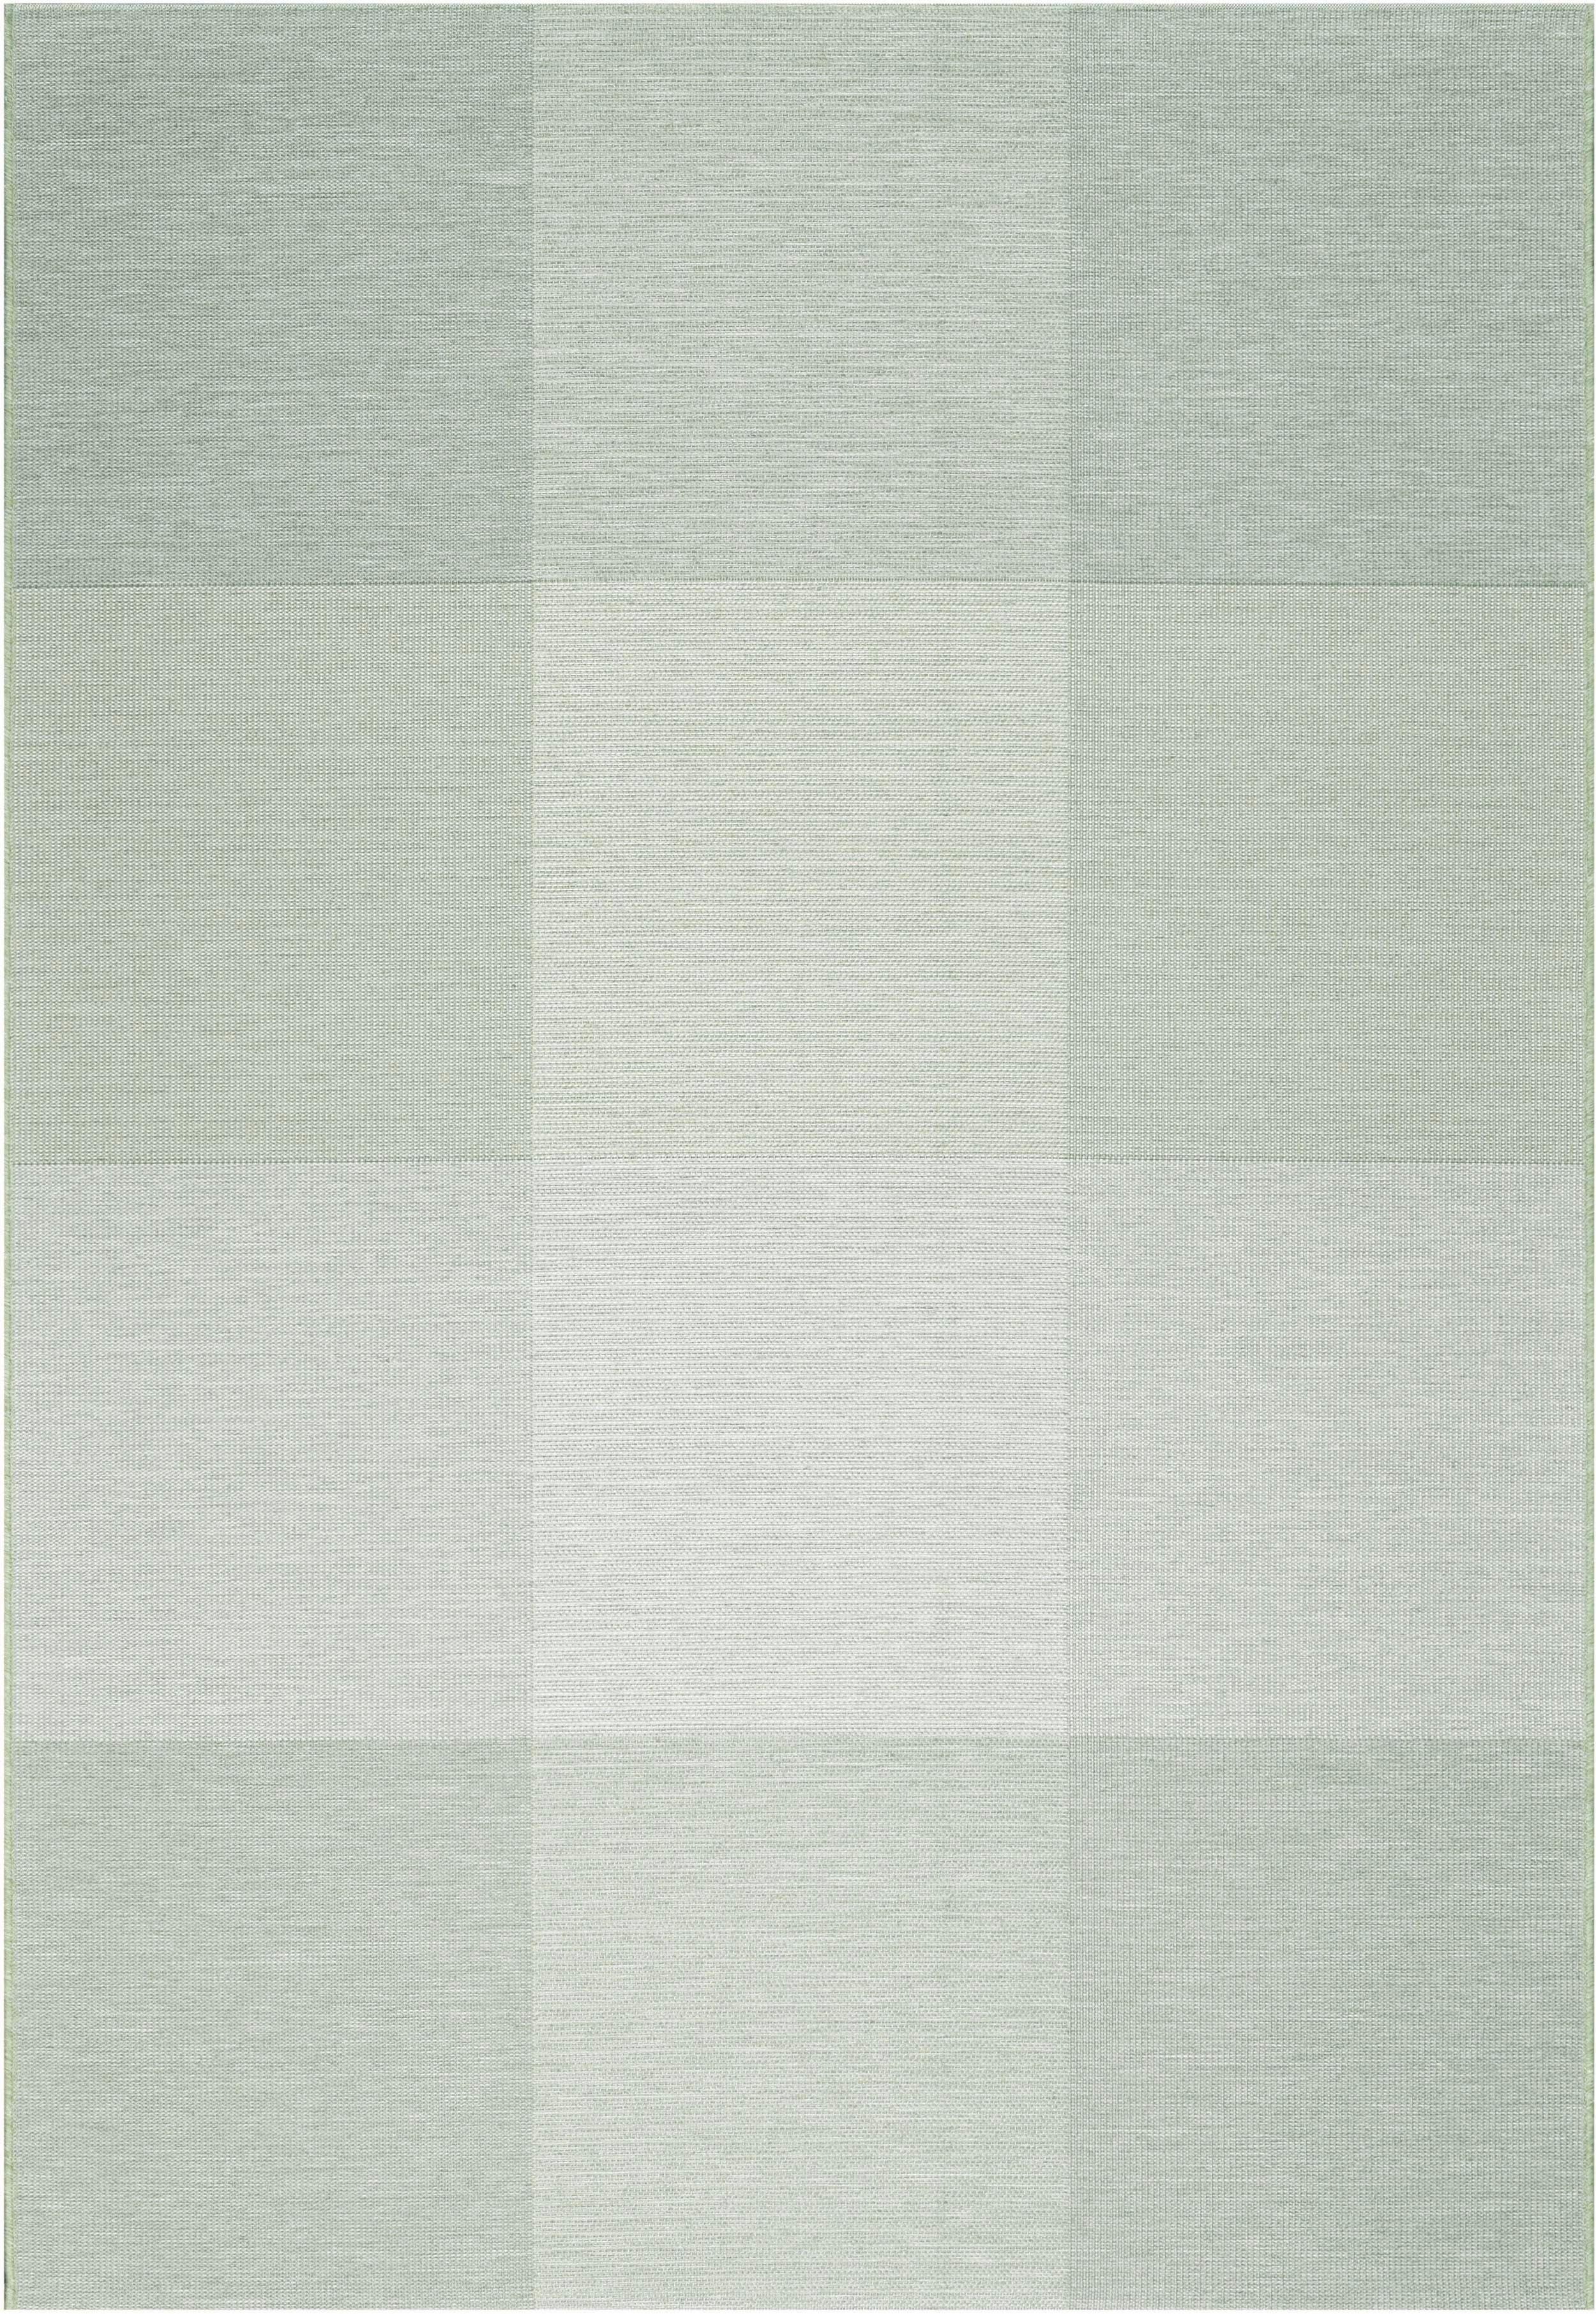 FLACHWEBETEPPICH  160/230 cm  Grün, Weiß, Hellgrün   - Weiß/Hellgrün, KONVENTIONELL, Textil (160/230cm) - Novel